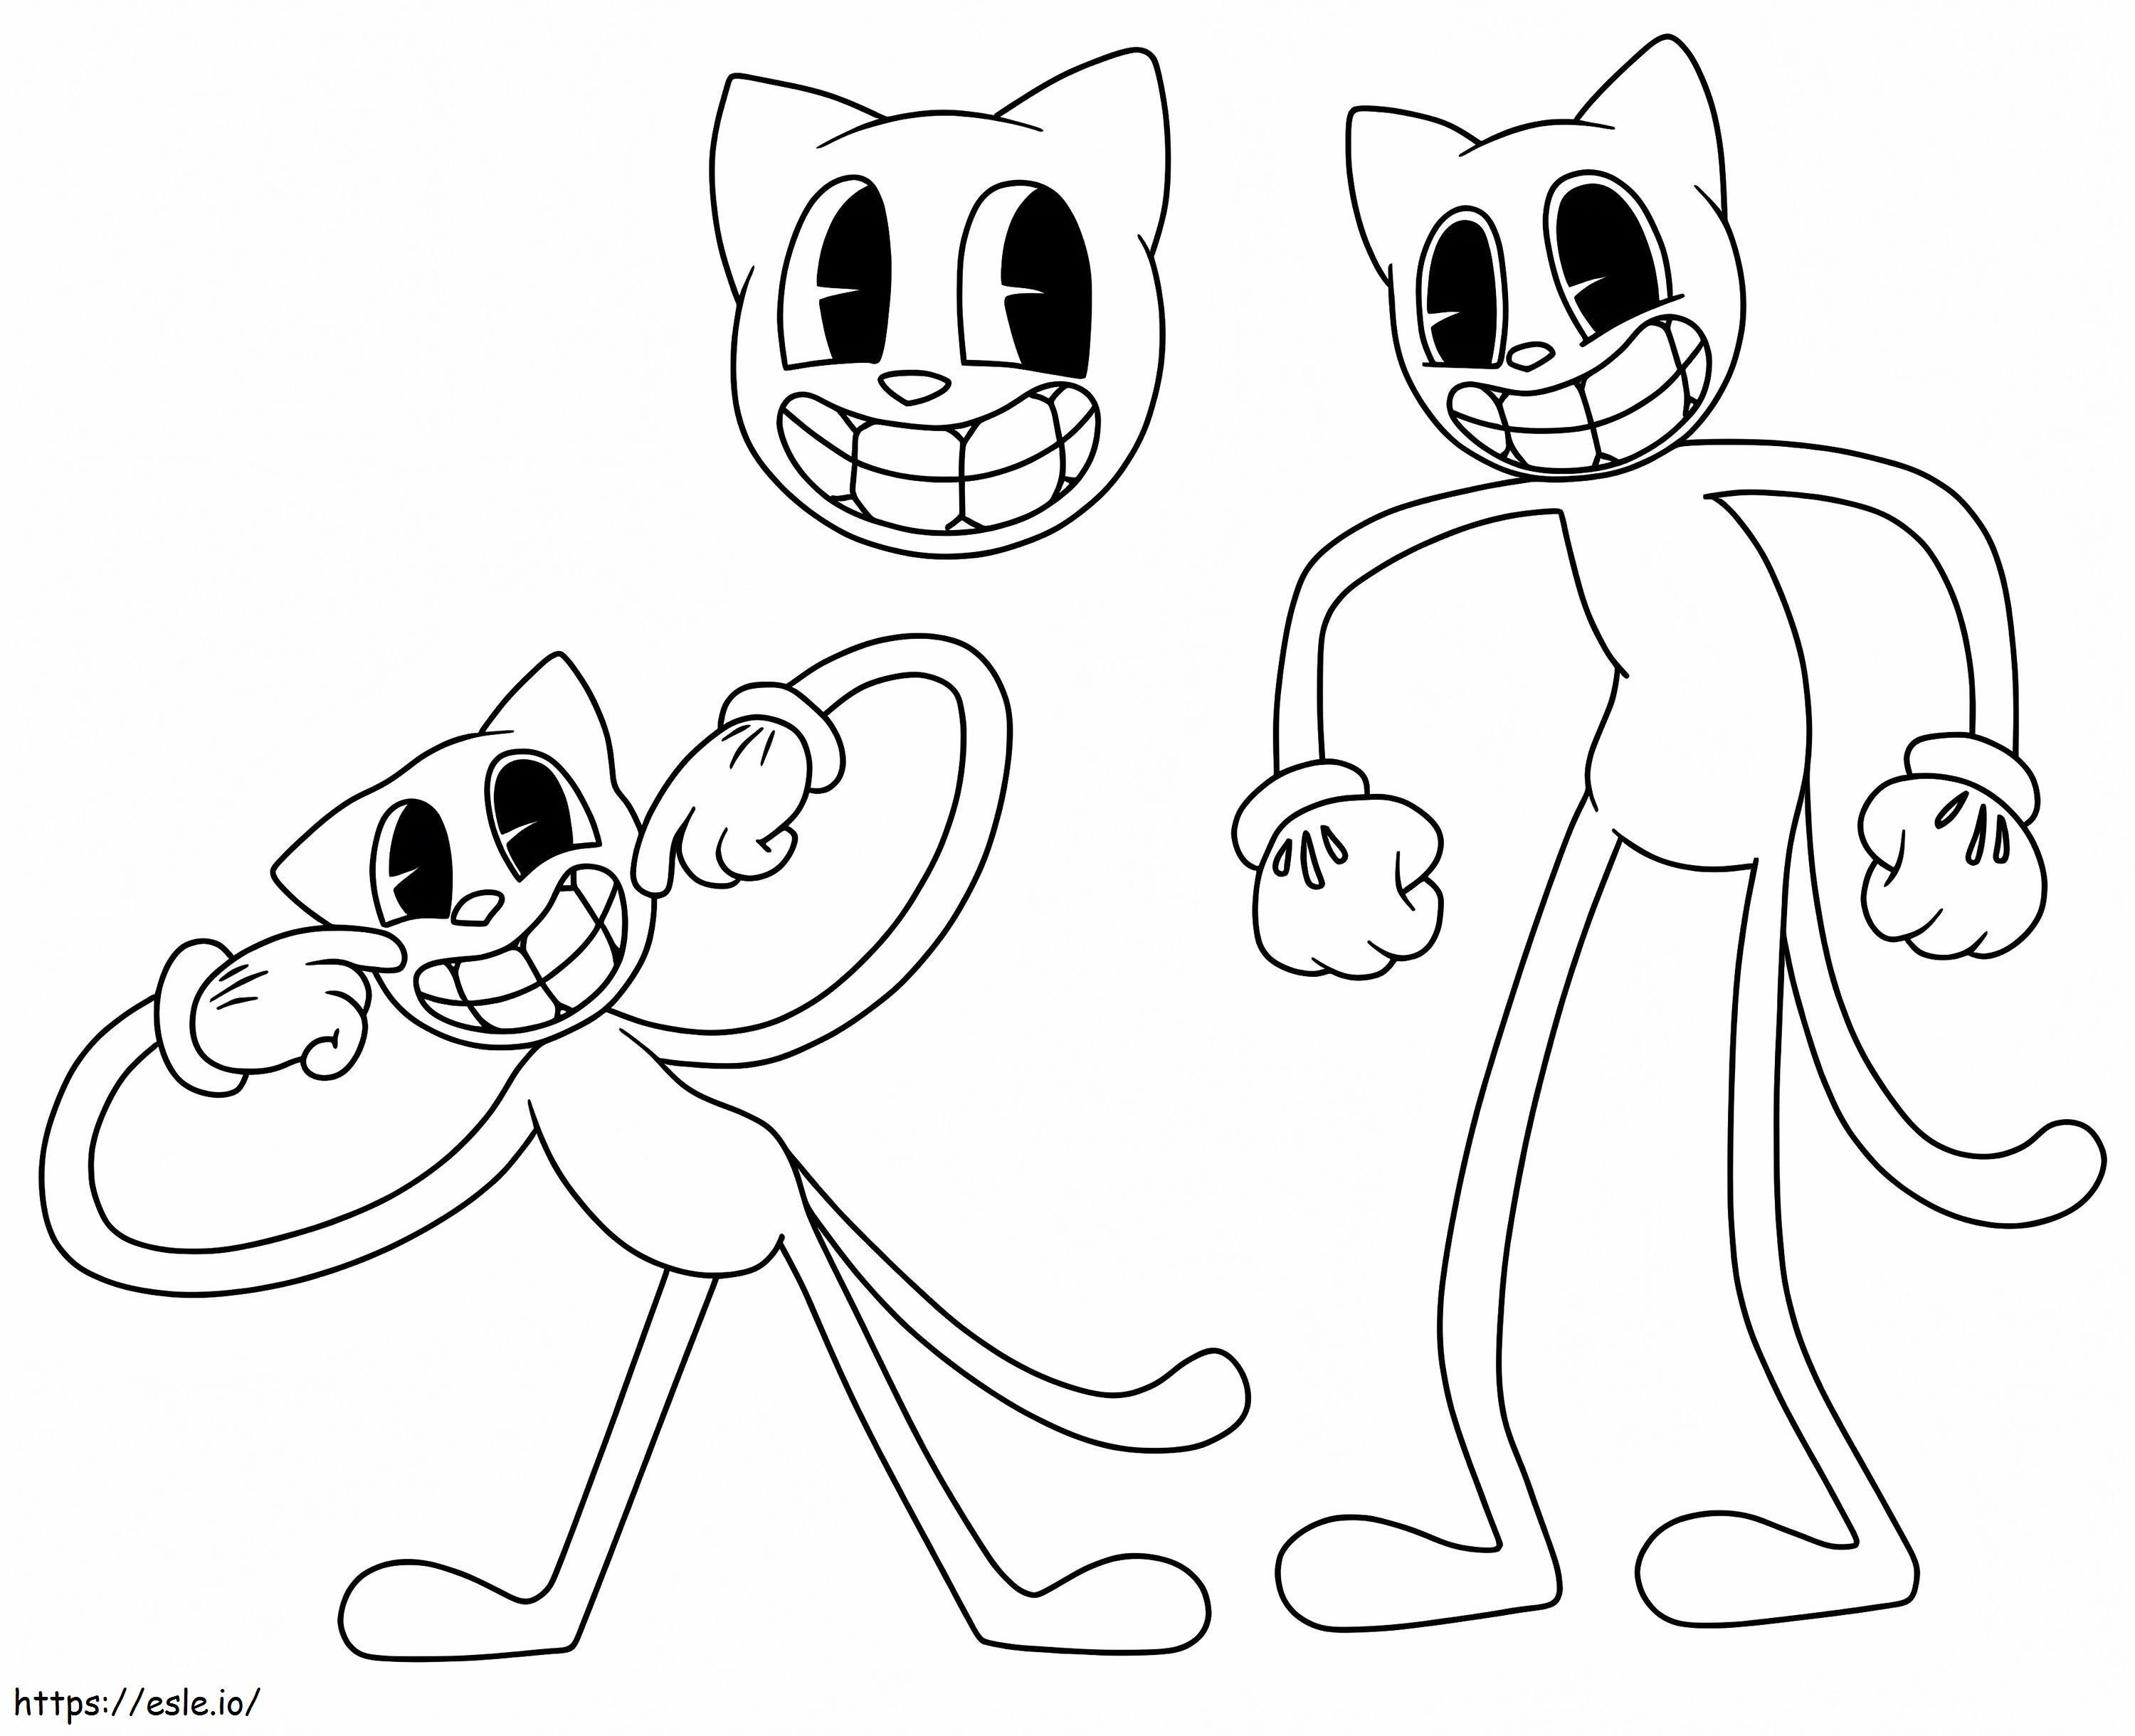 Gato engraçado dos desenhos animados 1 para colorir